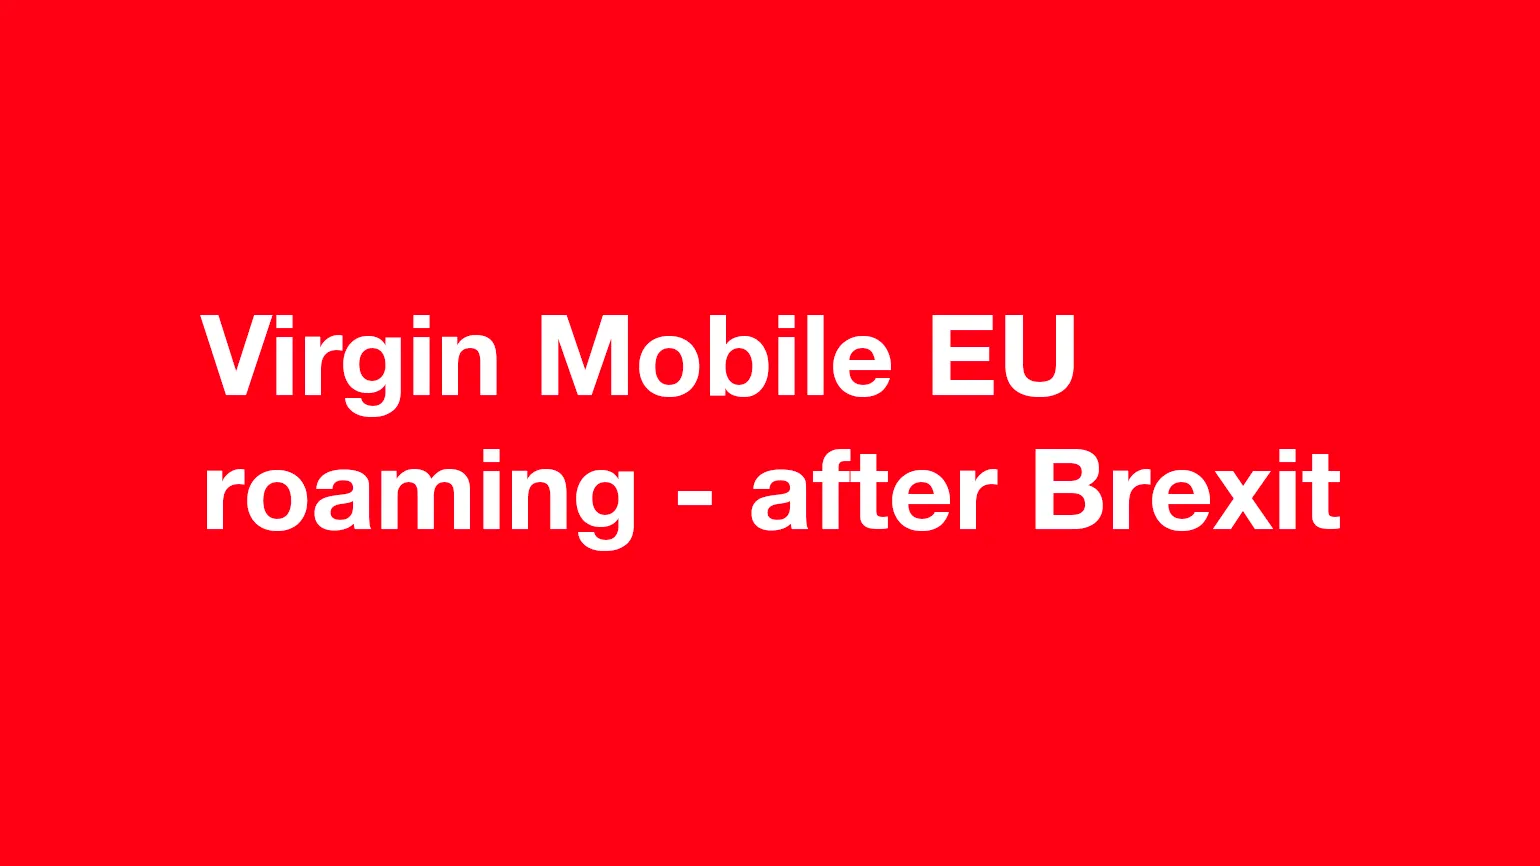 Virgin Mobile EU roaming - after Brexit